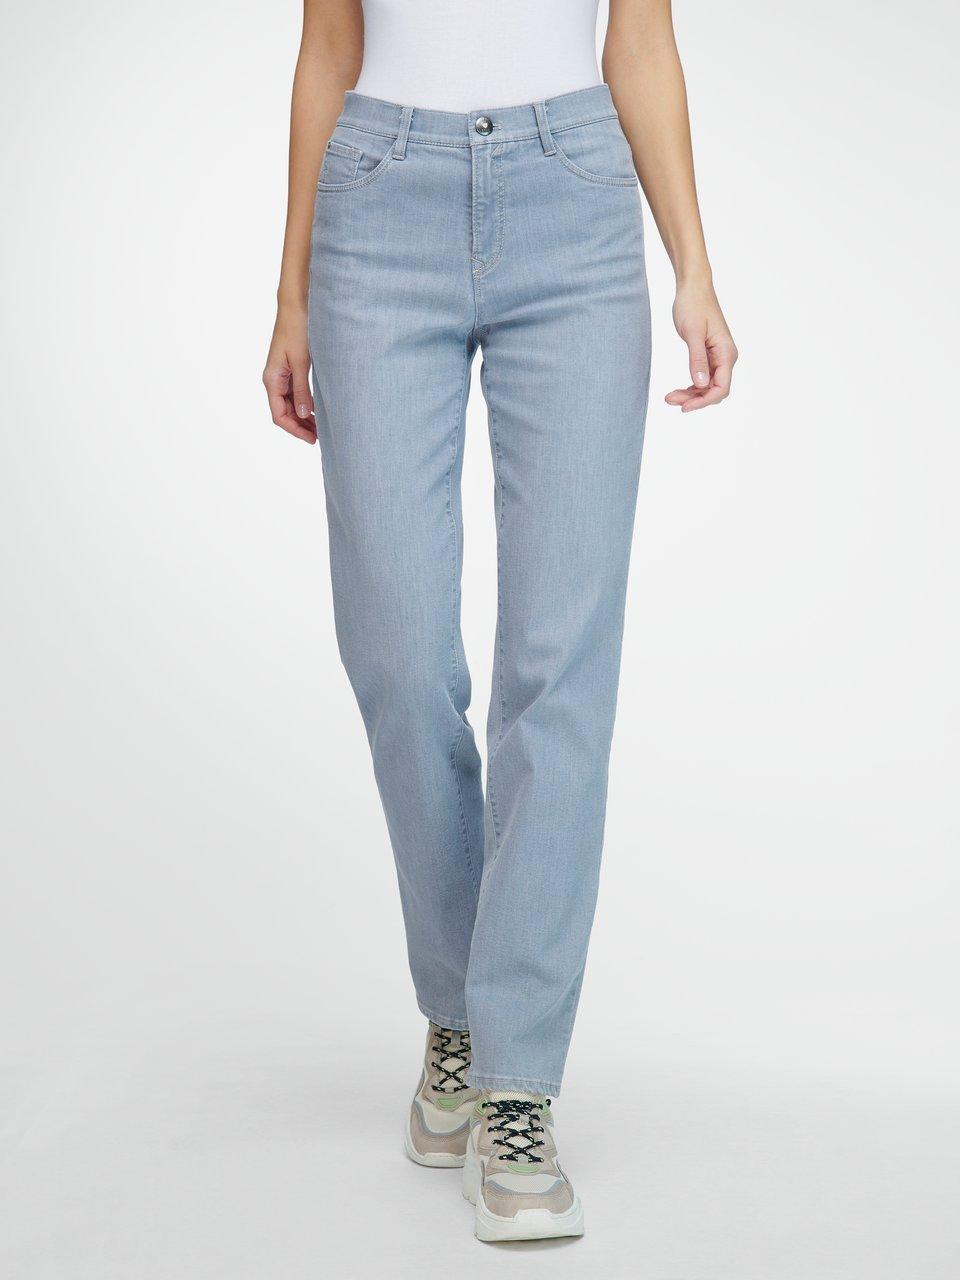 Graue Damen Jeans im Online-Shop kaufen Peter Hahn